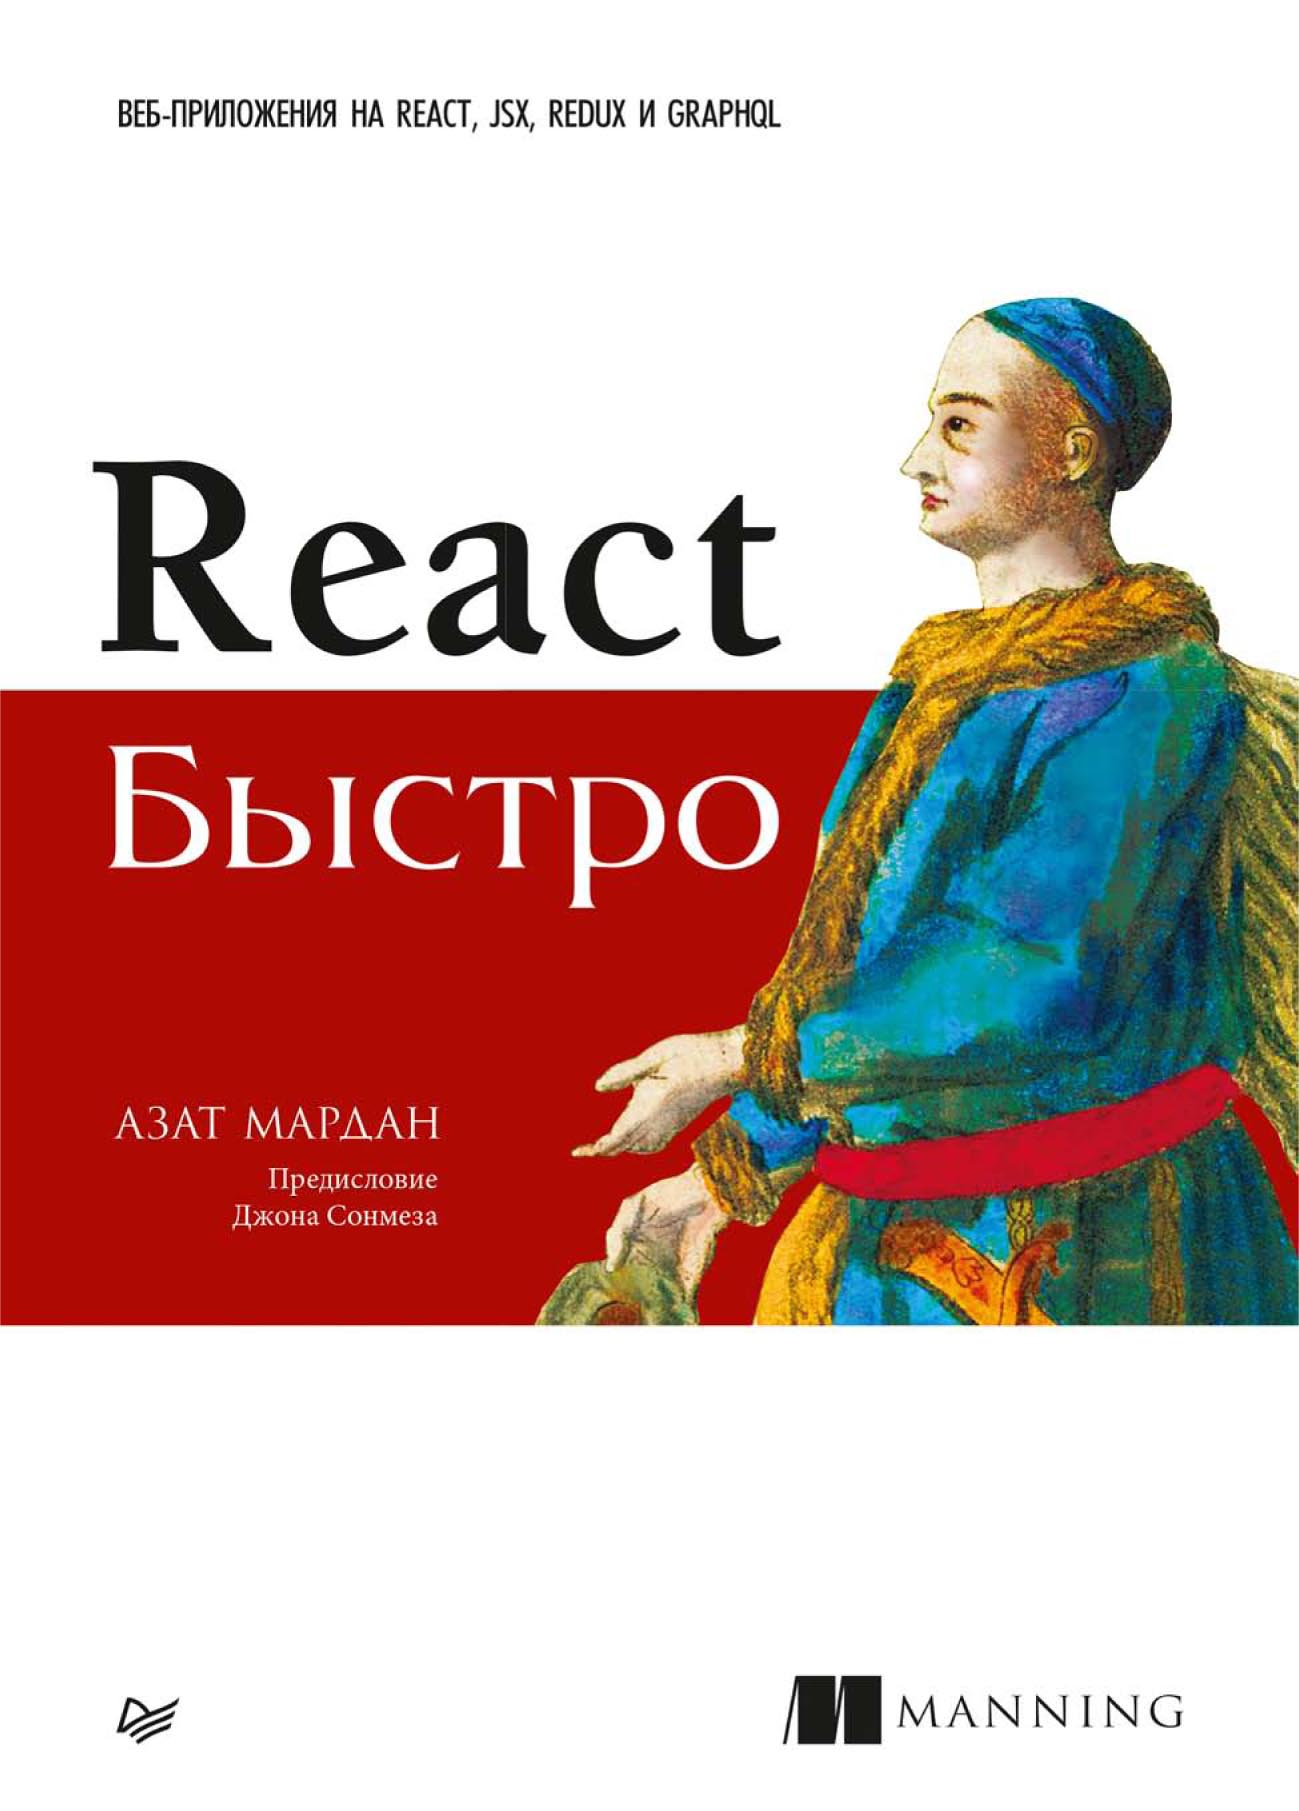 Книга Библиотека программиста (Питер) React быстро. Веб-приложения на React, JSX, Redux и GraphQL (pdf+epub) созданная Азат Мардан, Е. А. Матвеев может относится к жанру базы данных, интернет, информационная безопасность, программирование. Стоимость электронной книги React быстро. Веб-приложения на React, JSX, Redux и GraphQL (pdf+epub) с идентификатором 64086777 составляет 599.00 руб.